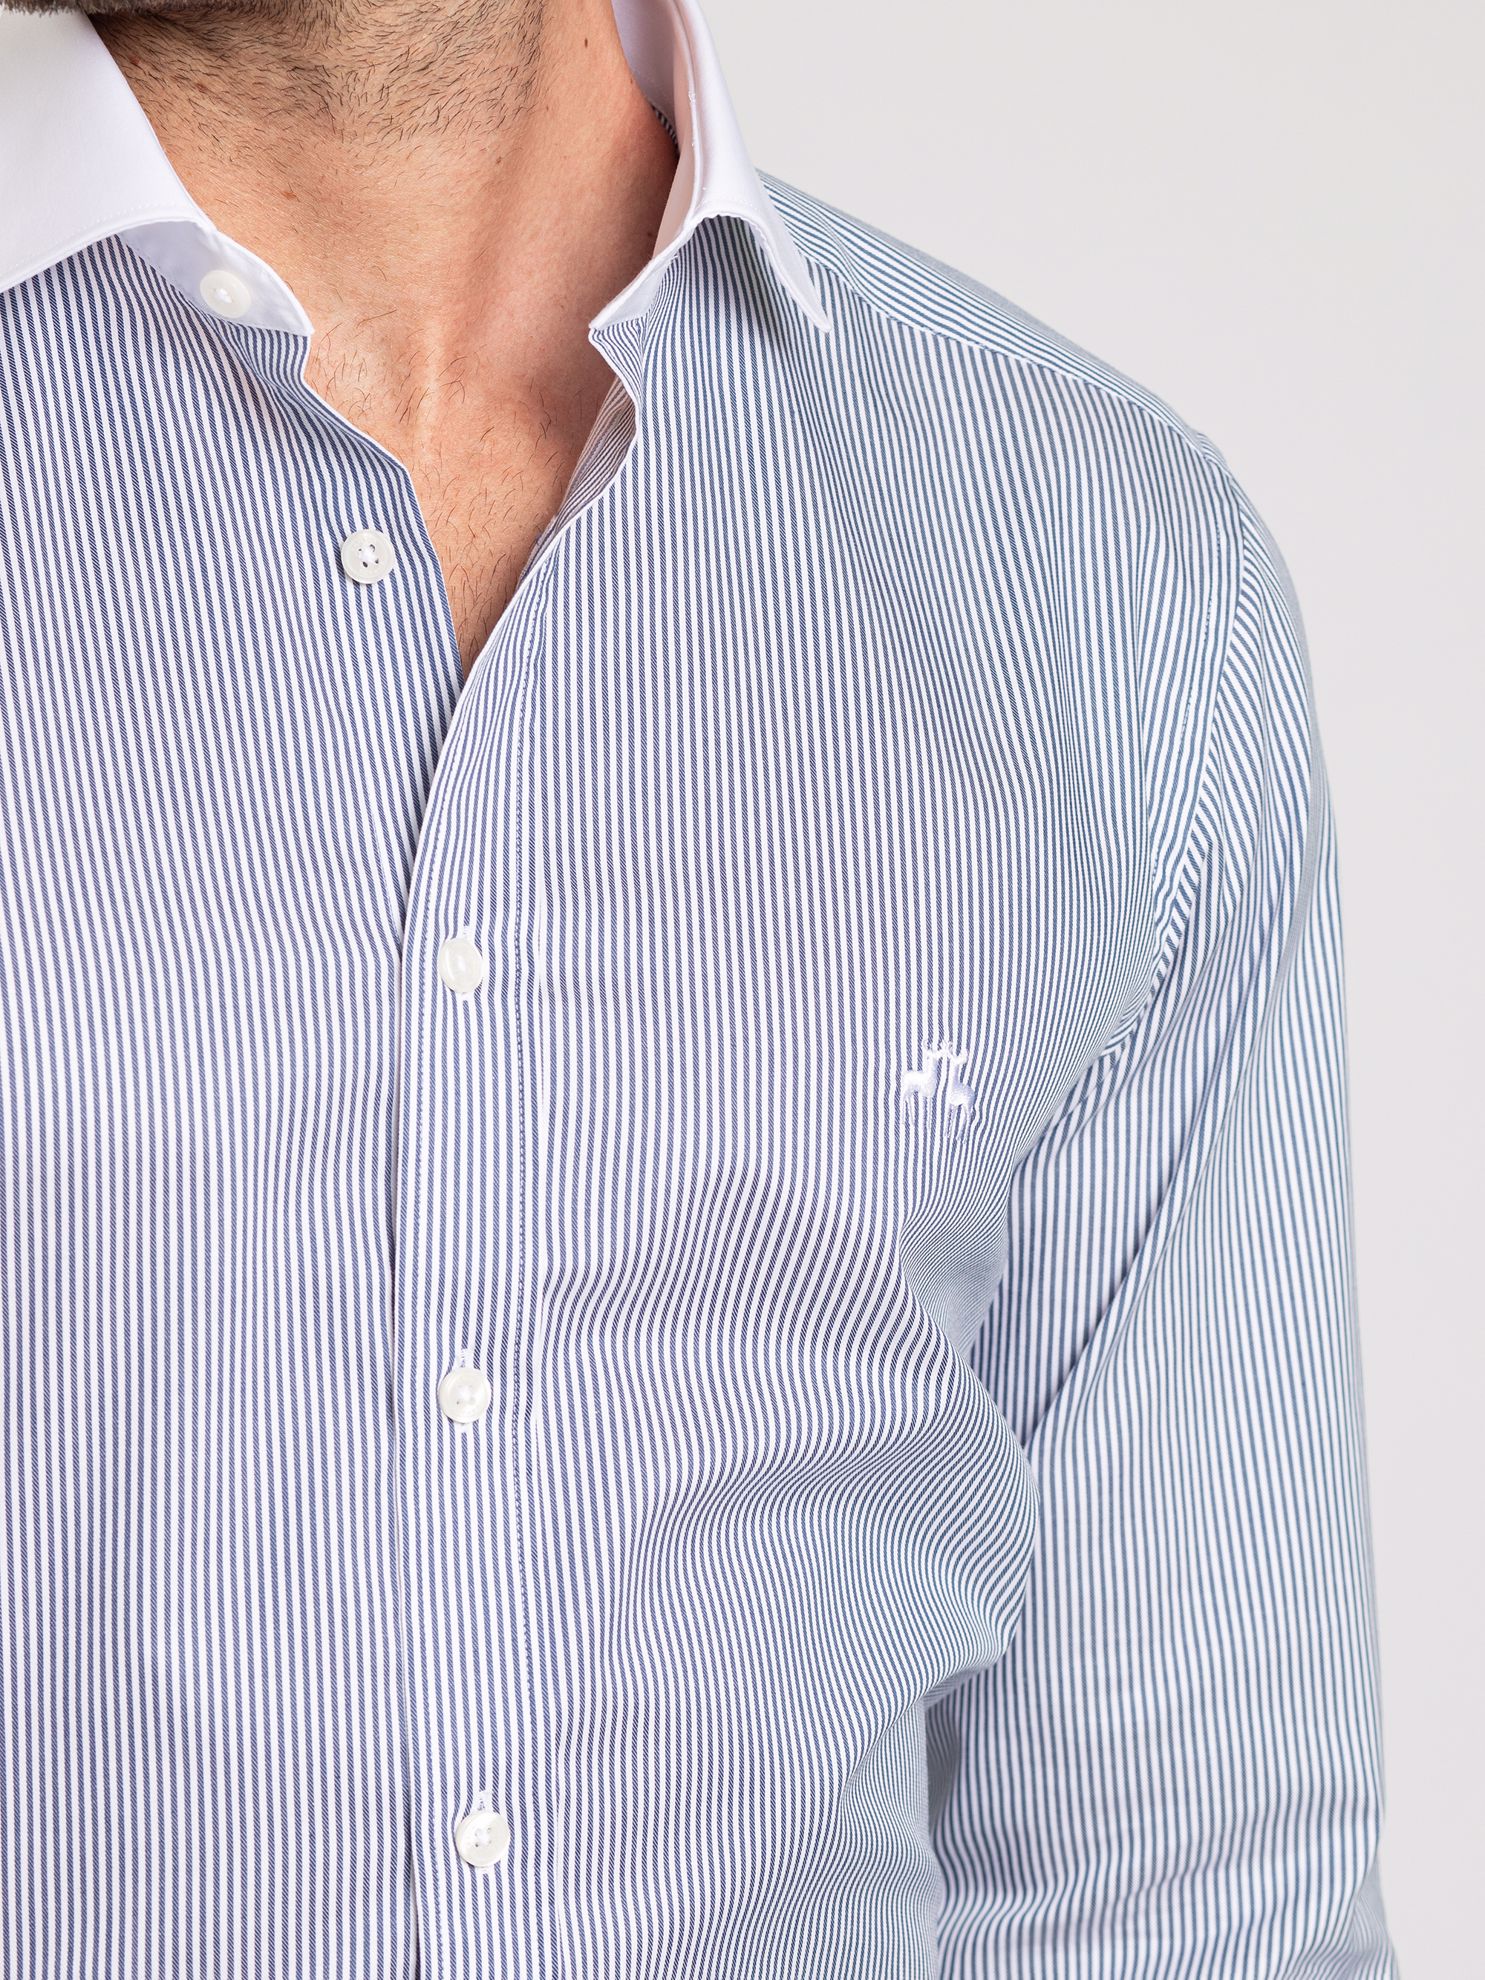 Karaca Erkek Slim Fit Gömlek-Lacivert . ürün görseli